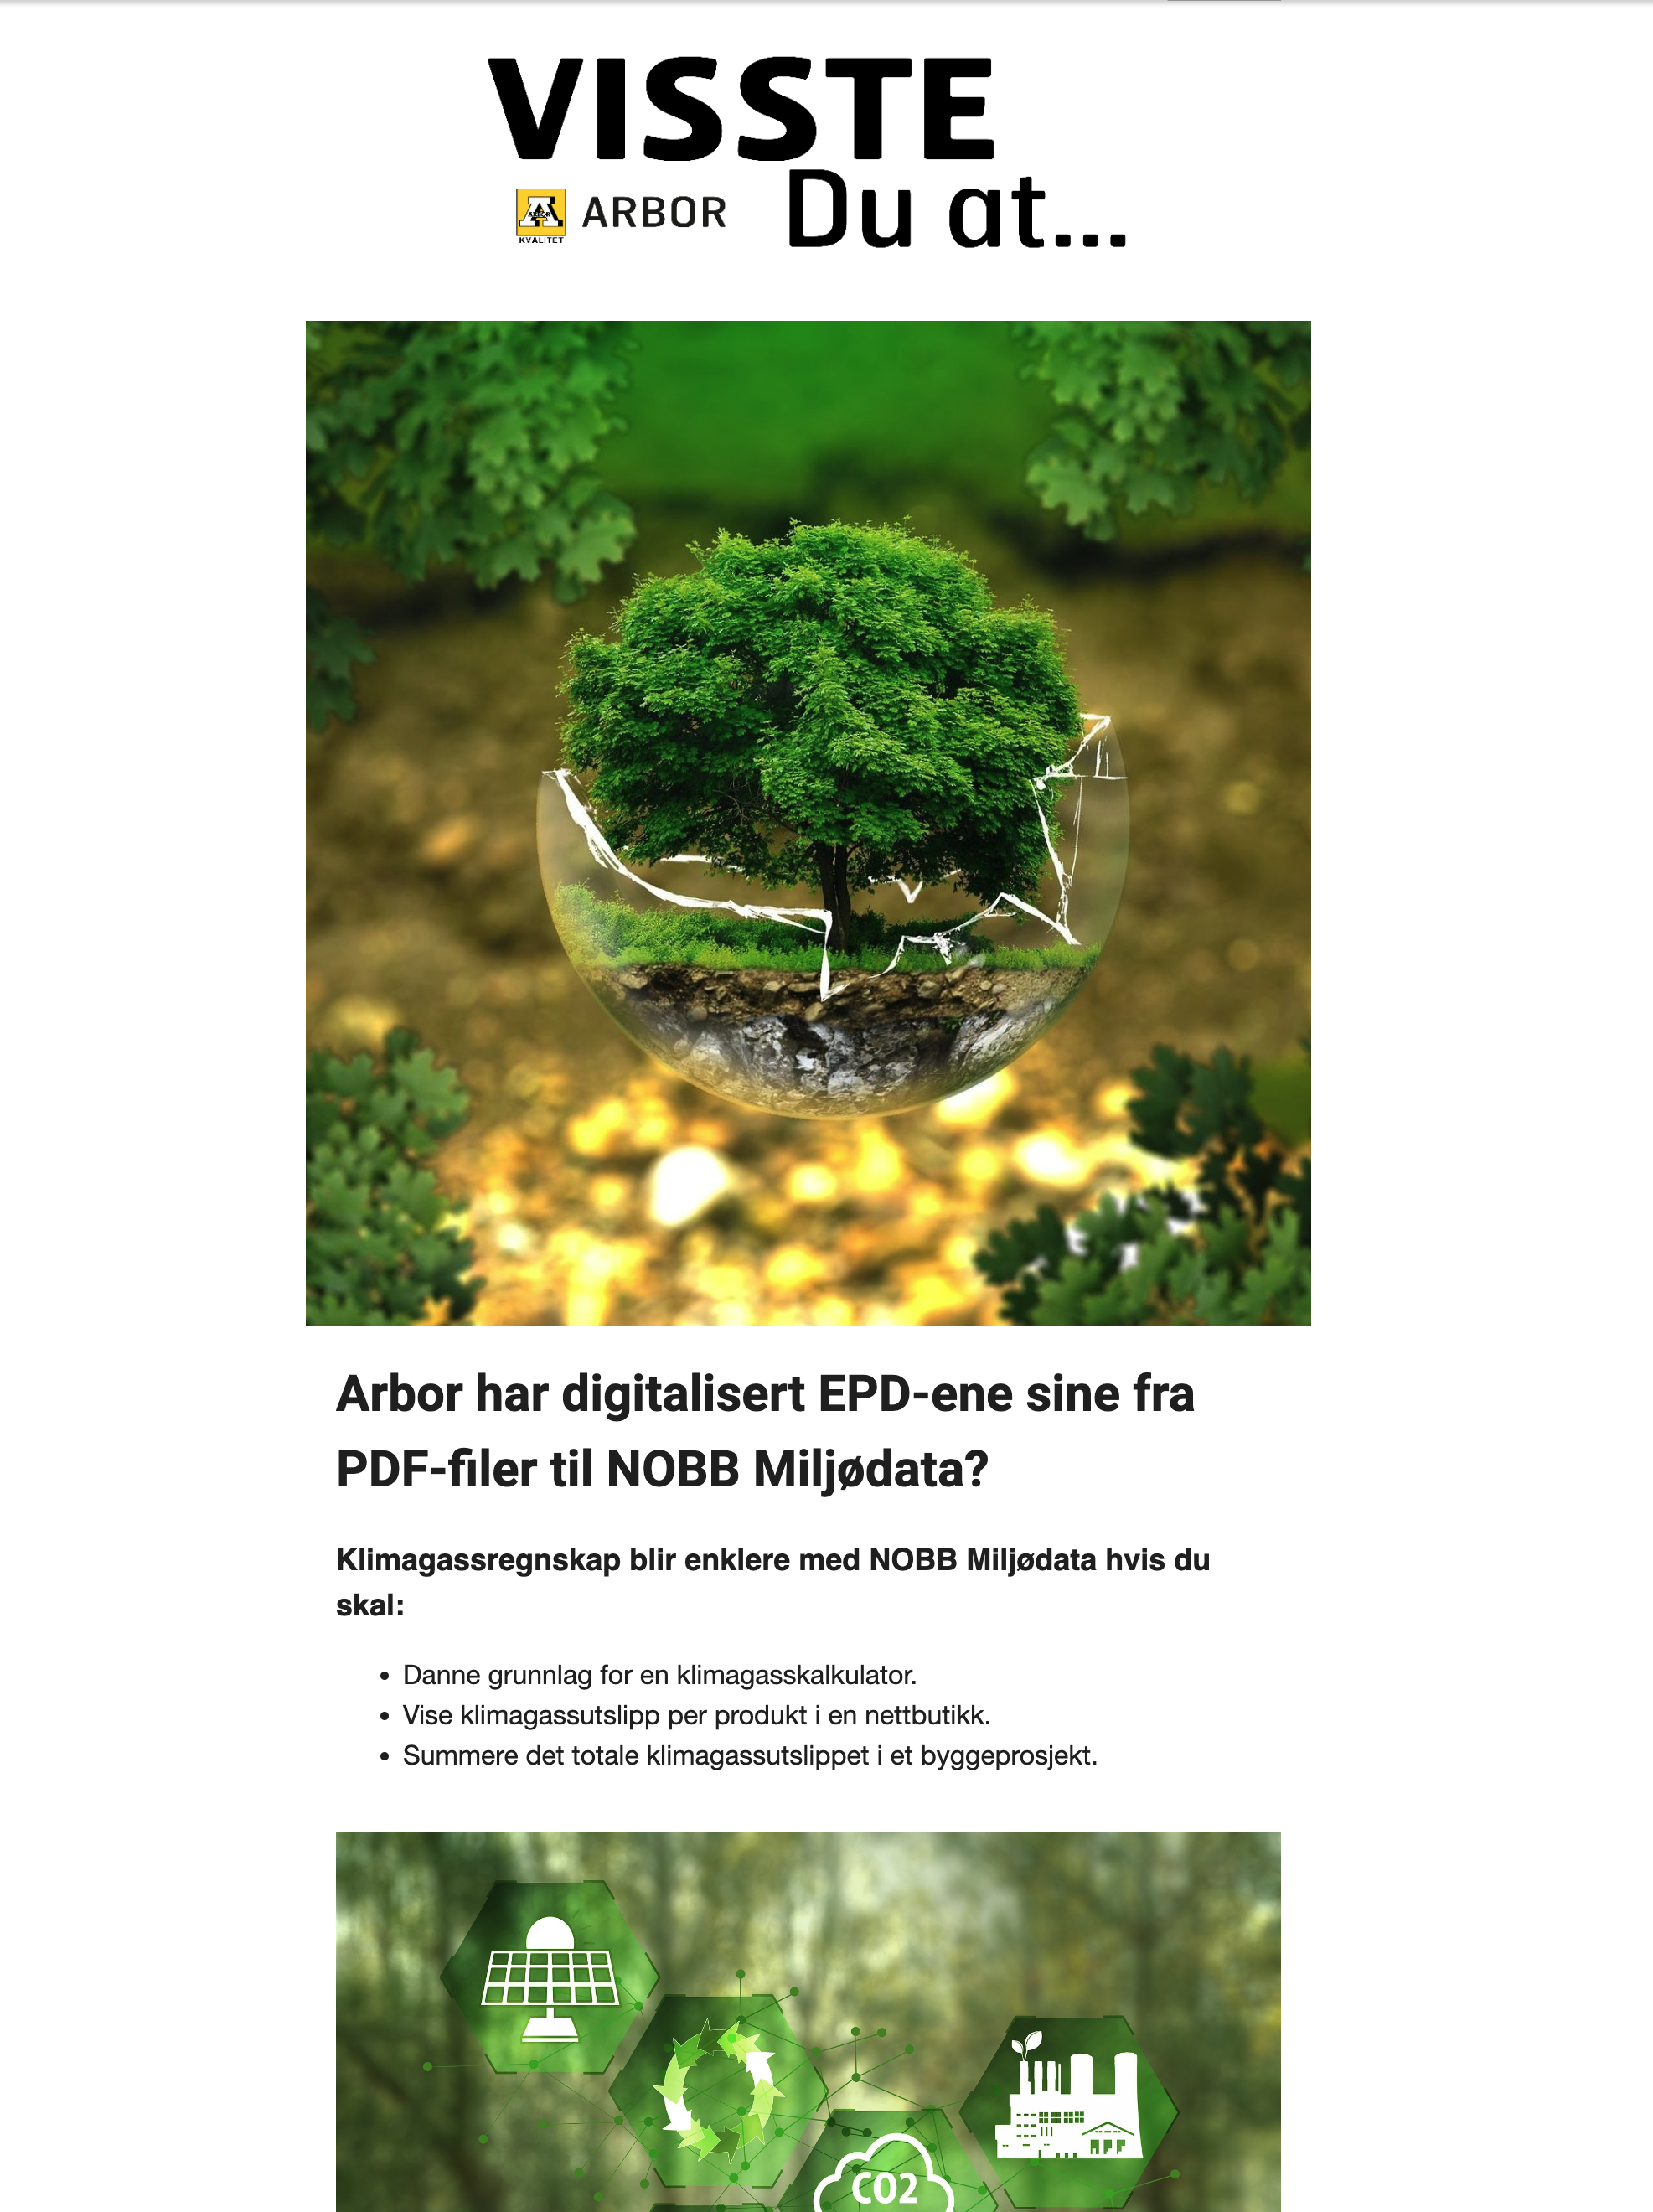 Arbor har digitalisert EPD-ene sine fra PDF-filer til NOBB Miljødata?